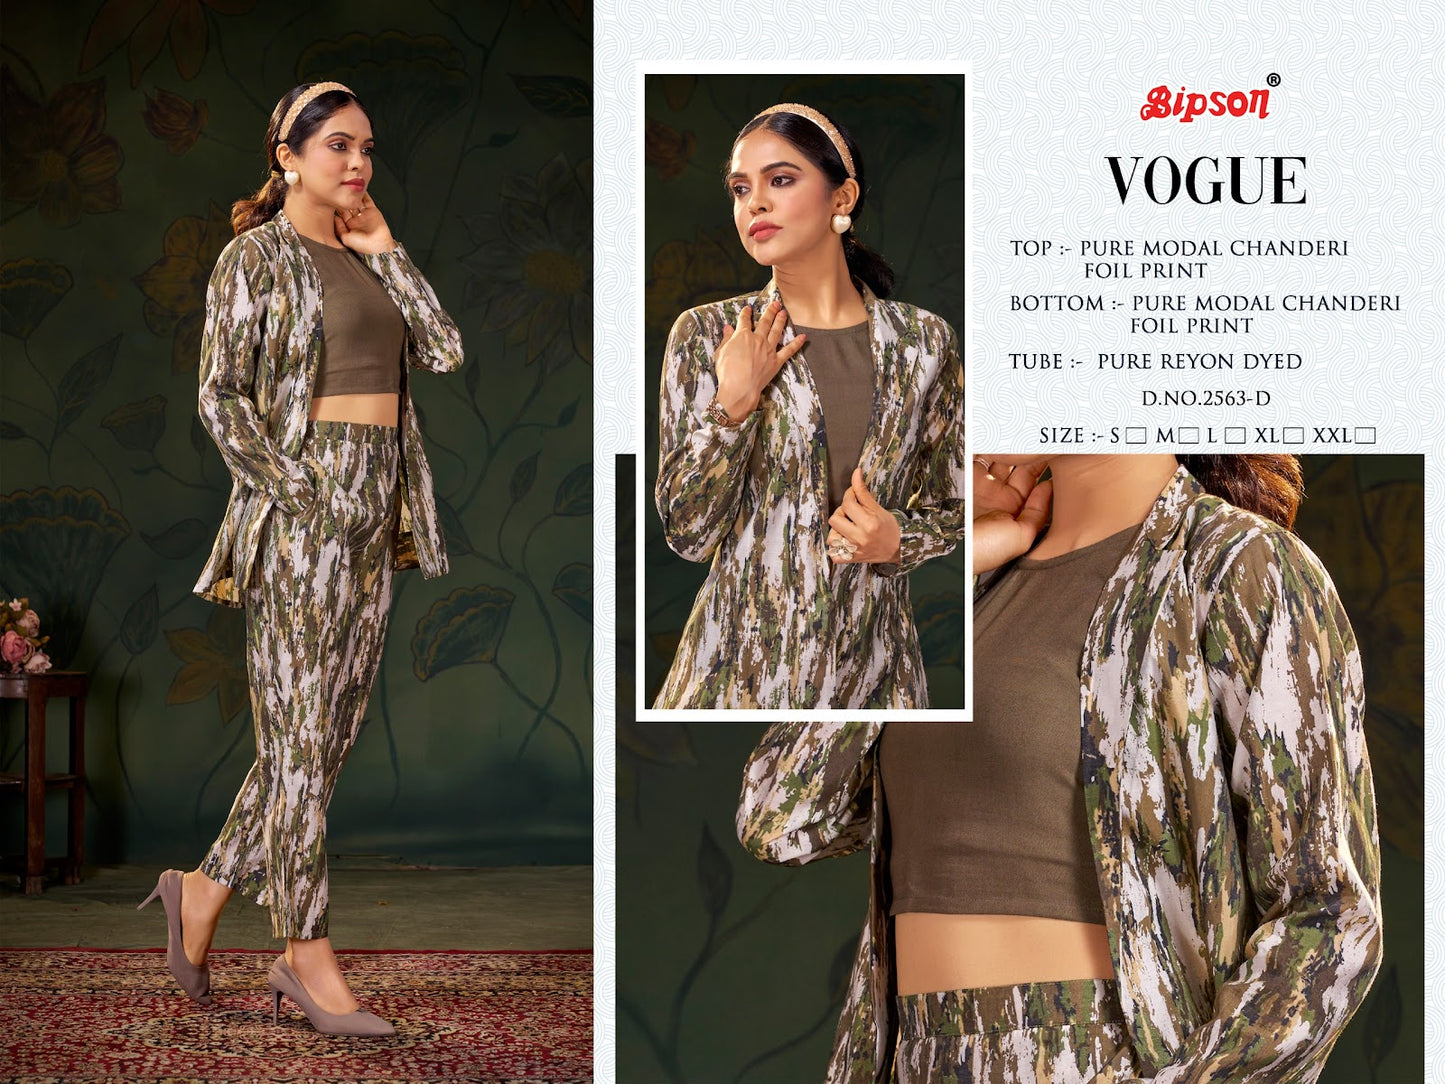 Vogue 2563 Bipson Prints Modal Chanderi Co Ord Set